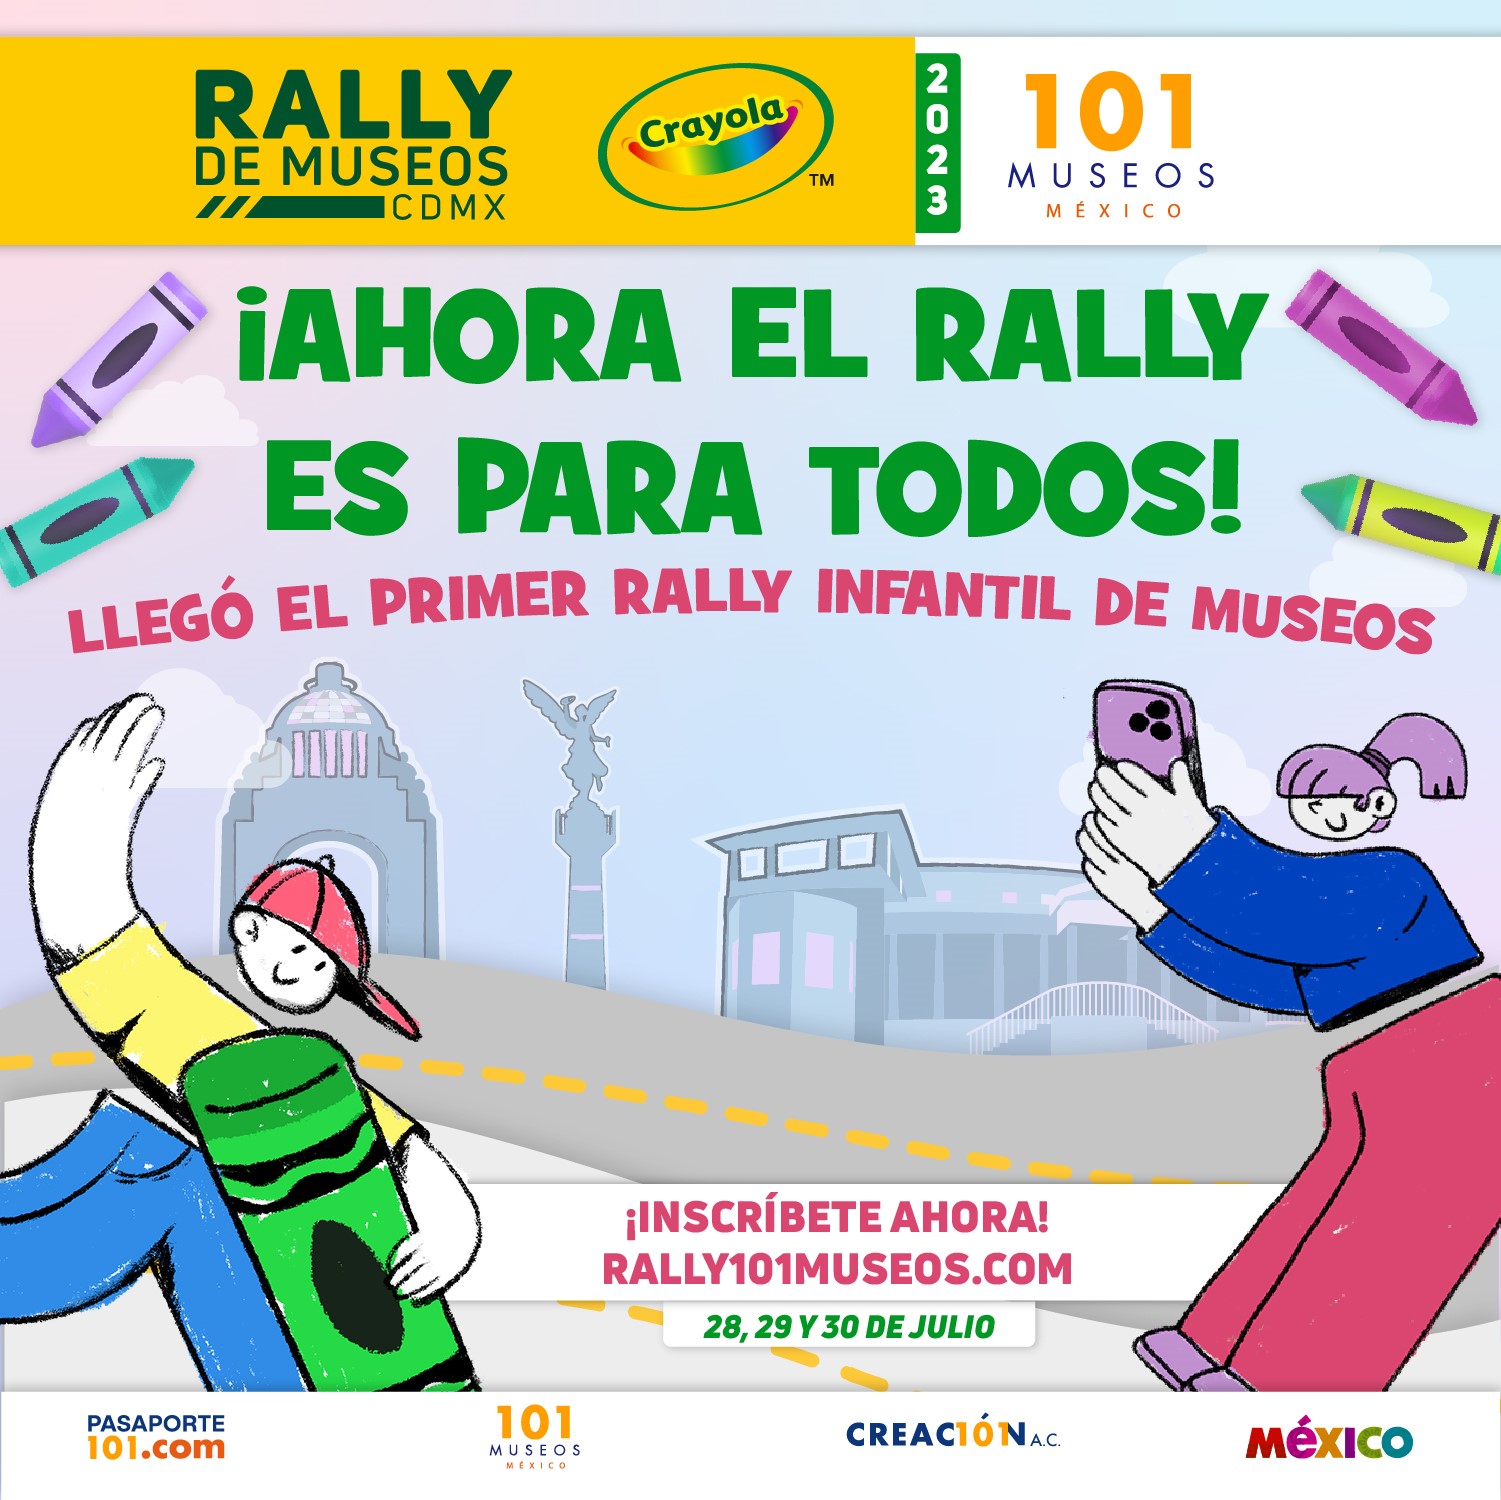 rally de museos crayola 2023 cdmx